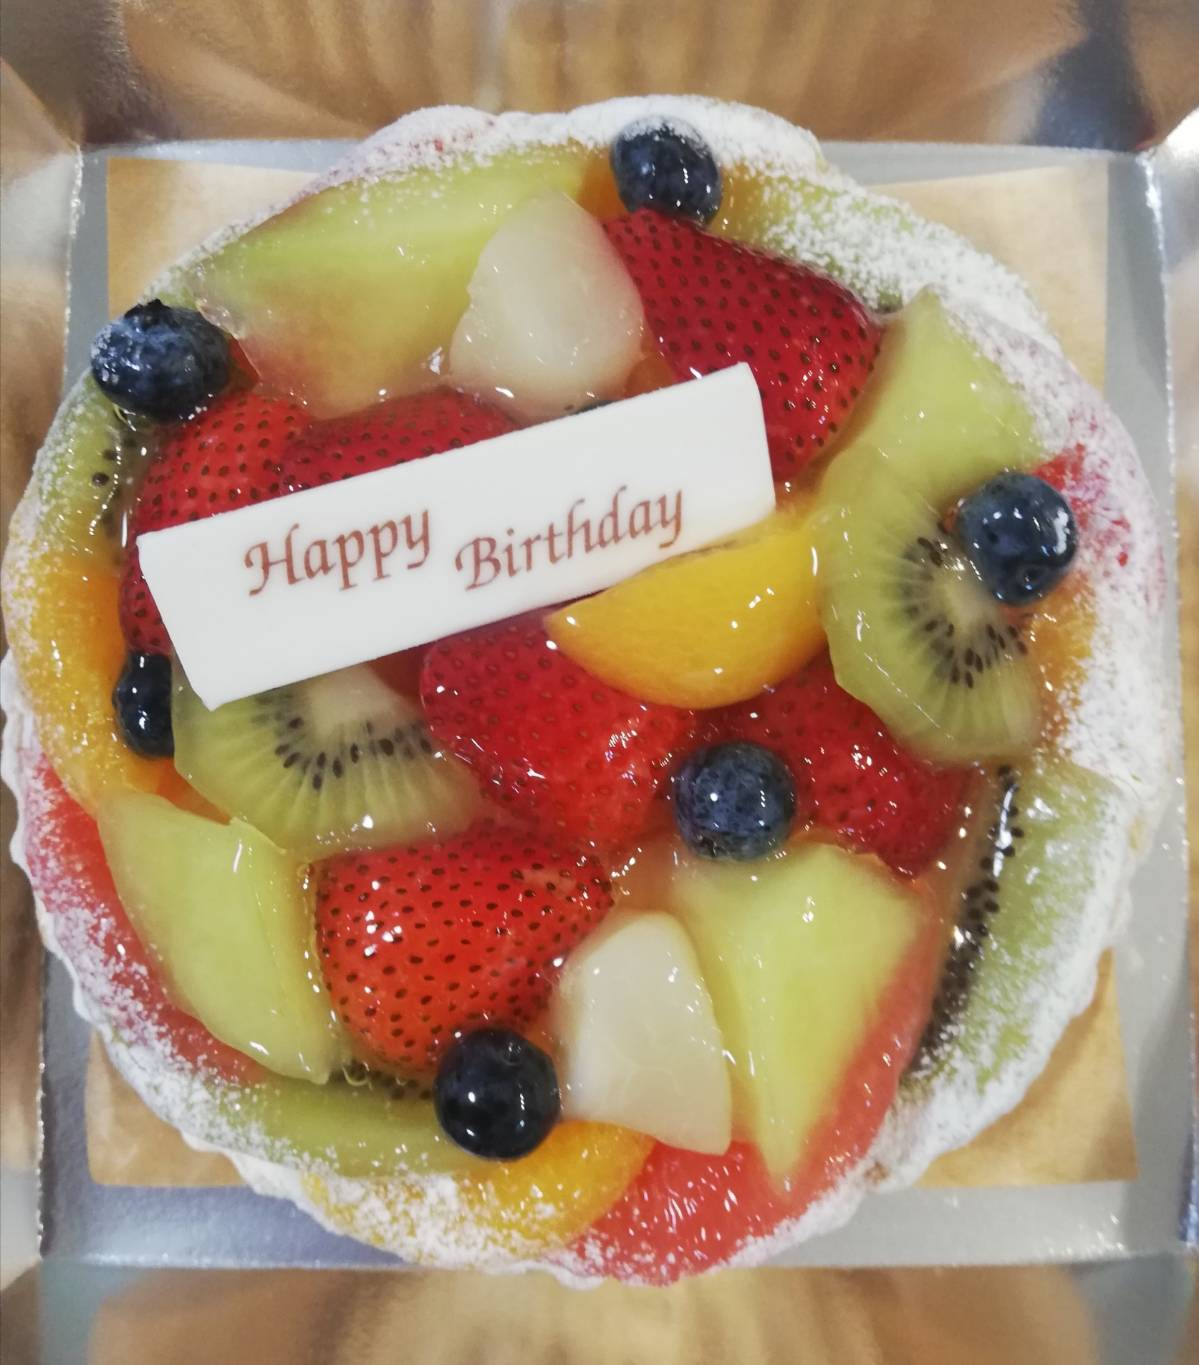 アトレ松戸で誕生日ケーキ ア ラ カンパーニュでタルトケーキを堪能 アトレ松戸3階 松戸ロード 松戸の地域情報